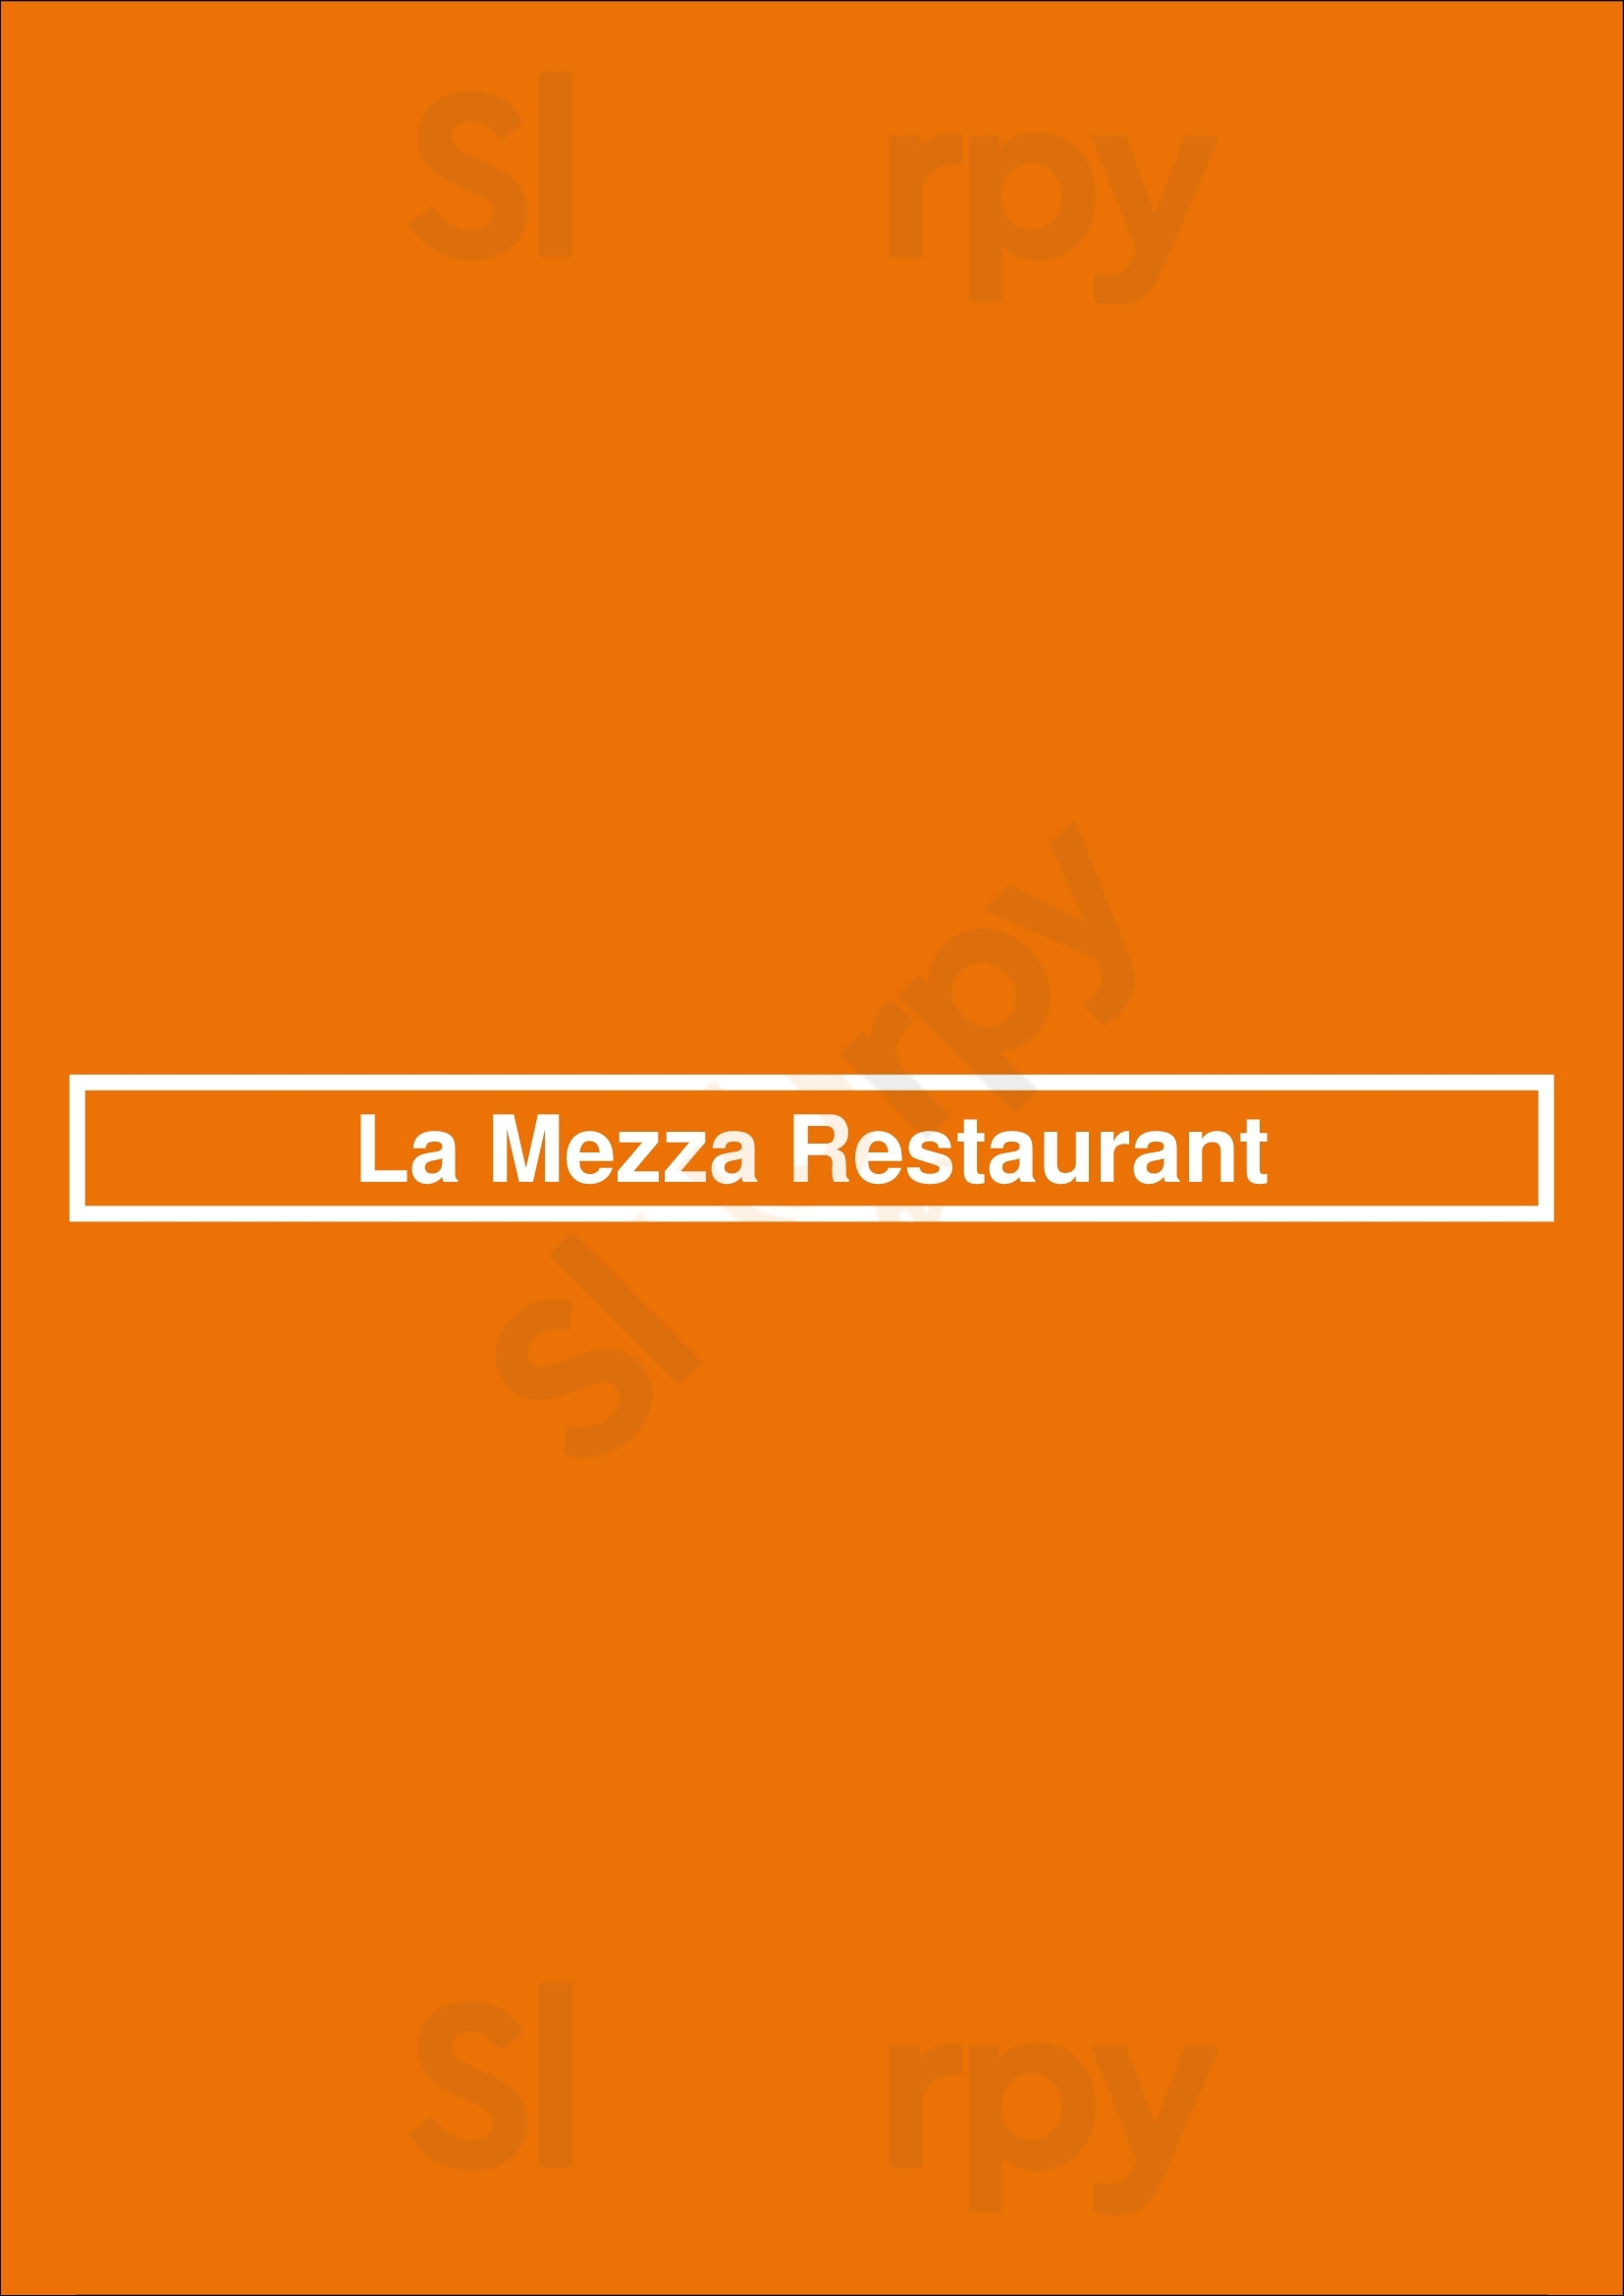 La Mezza Restaurant Lille Menu - 1